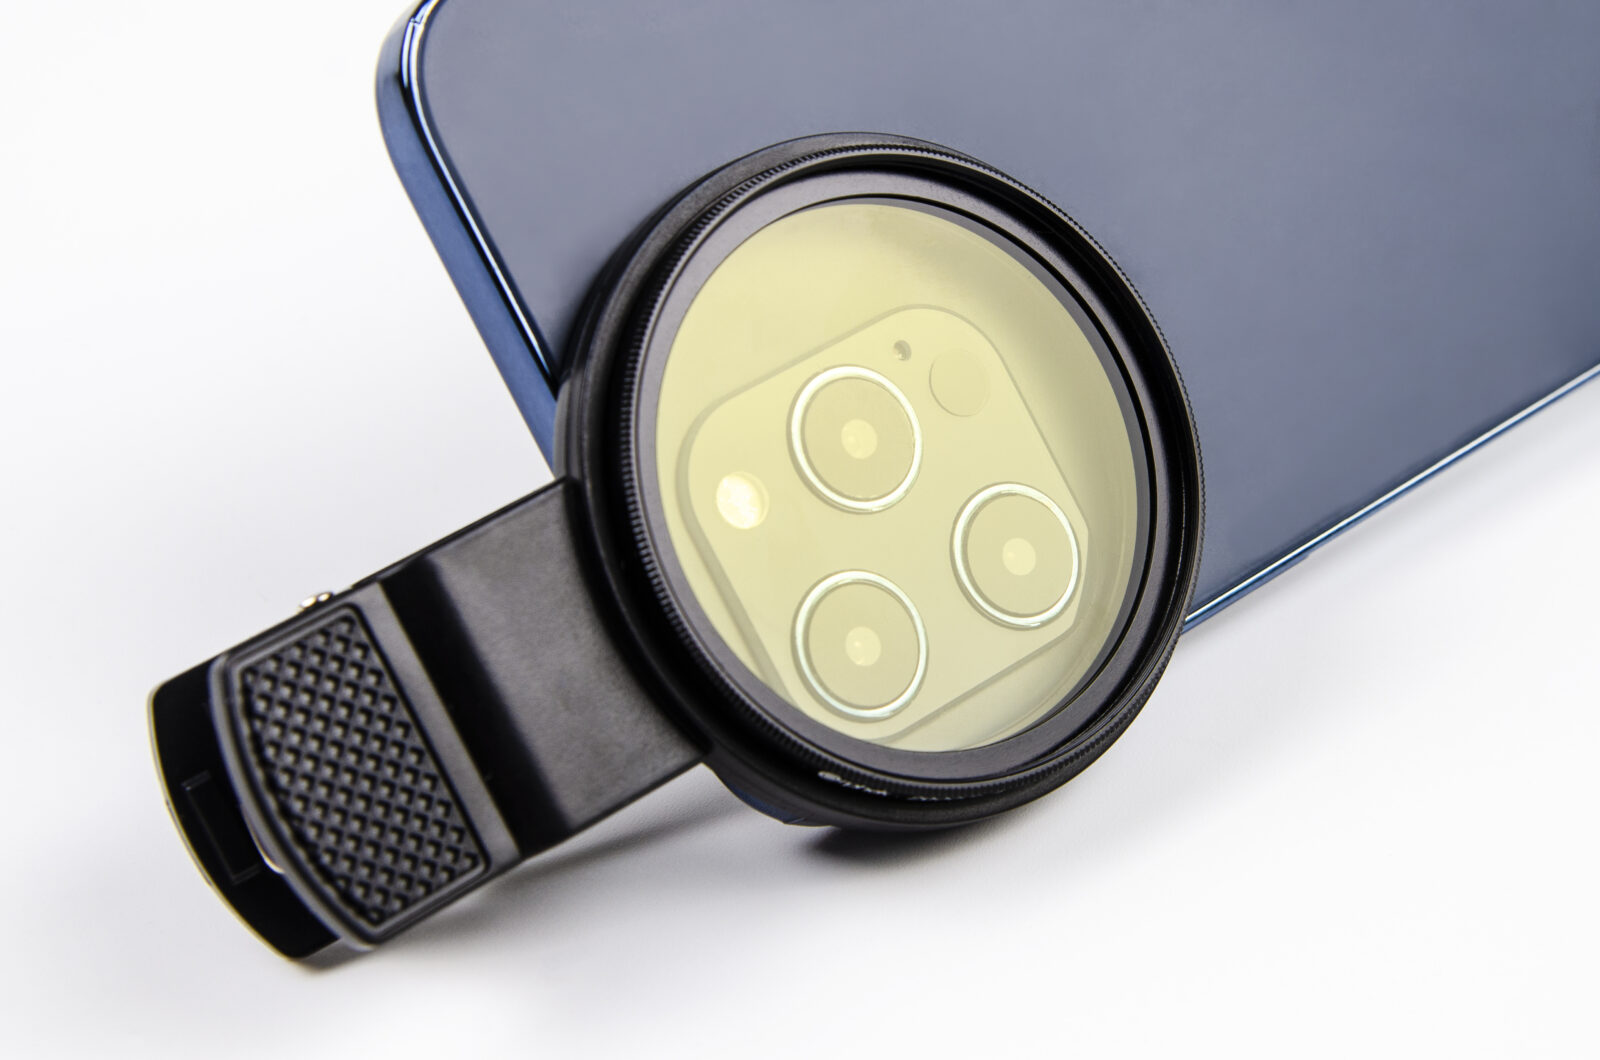 Coral Lens Kit přináší nový extra širší objektiv 52 mm